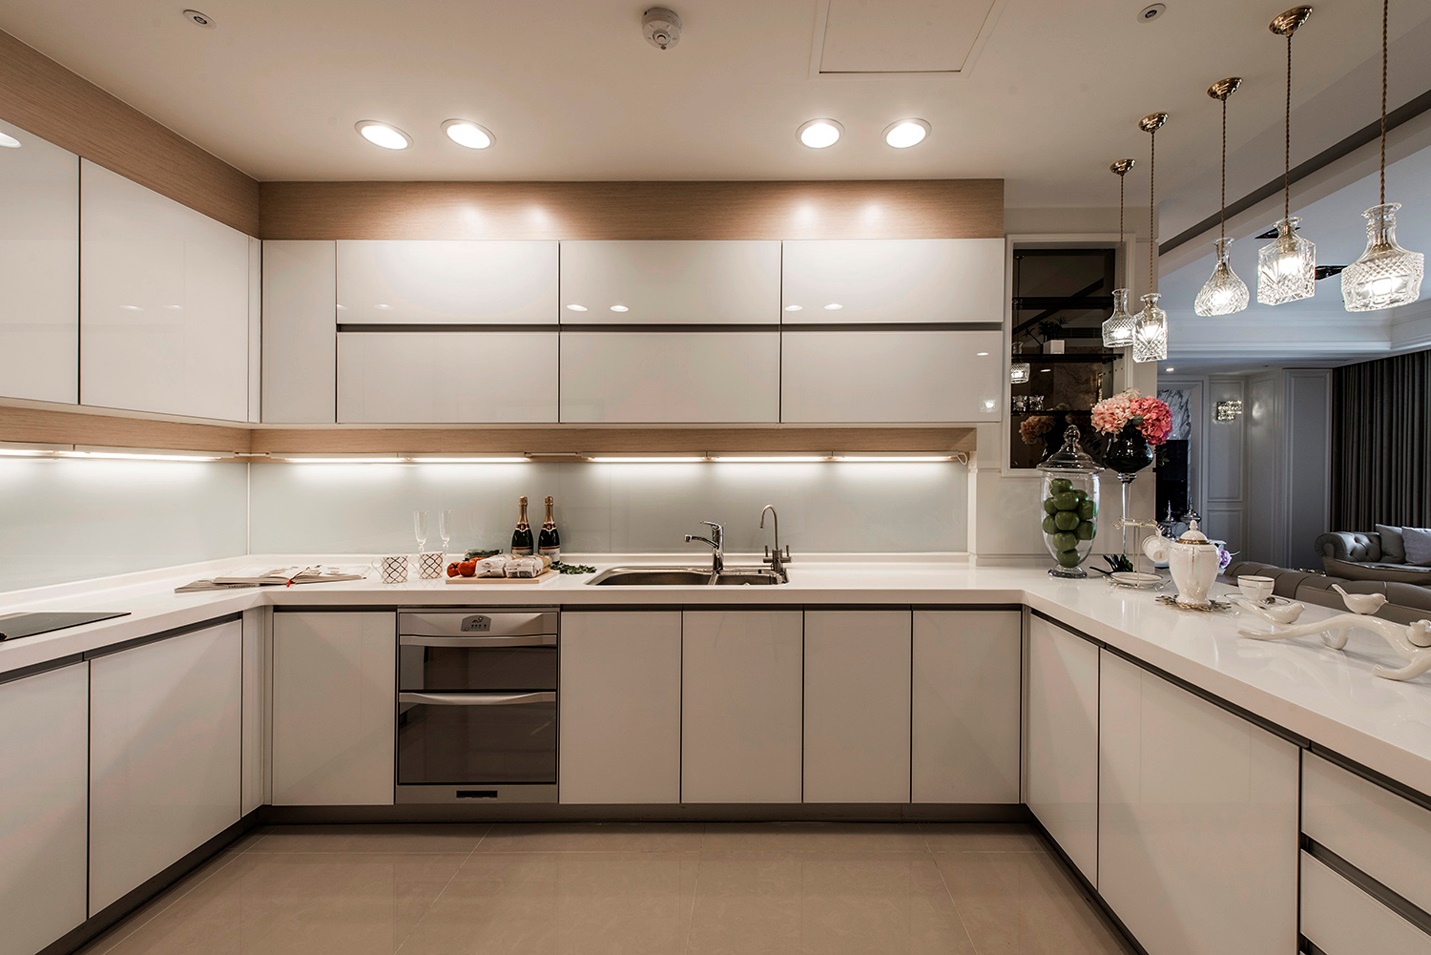 整体橱柜统一协调厨房用具,合理利用厨房空间